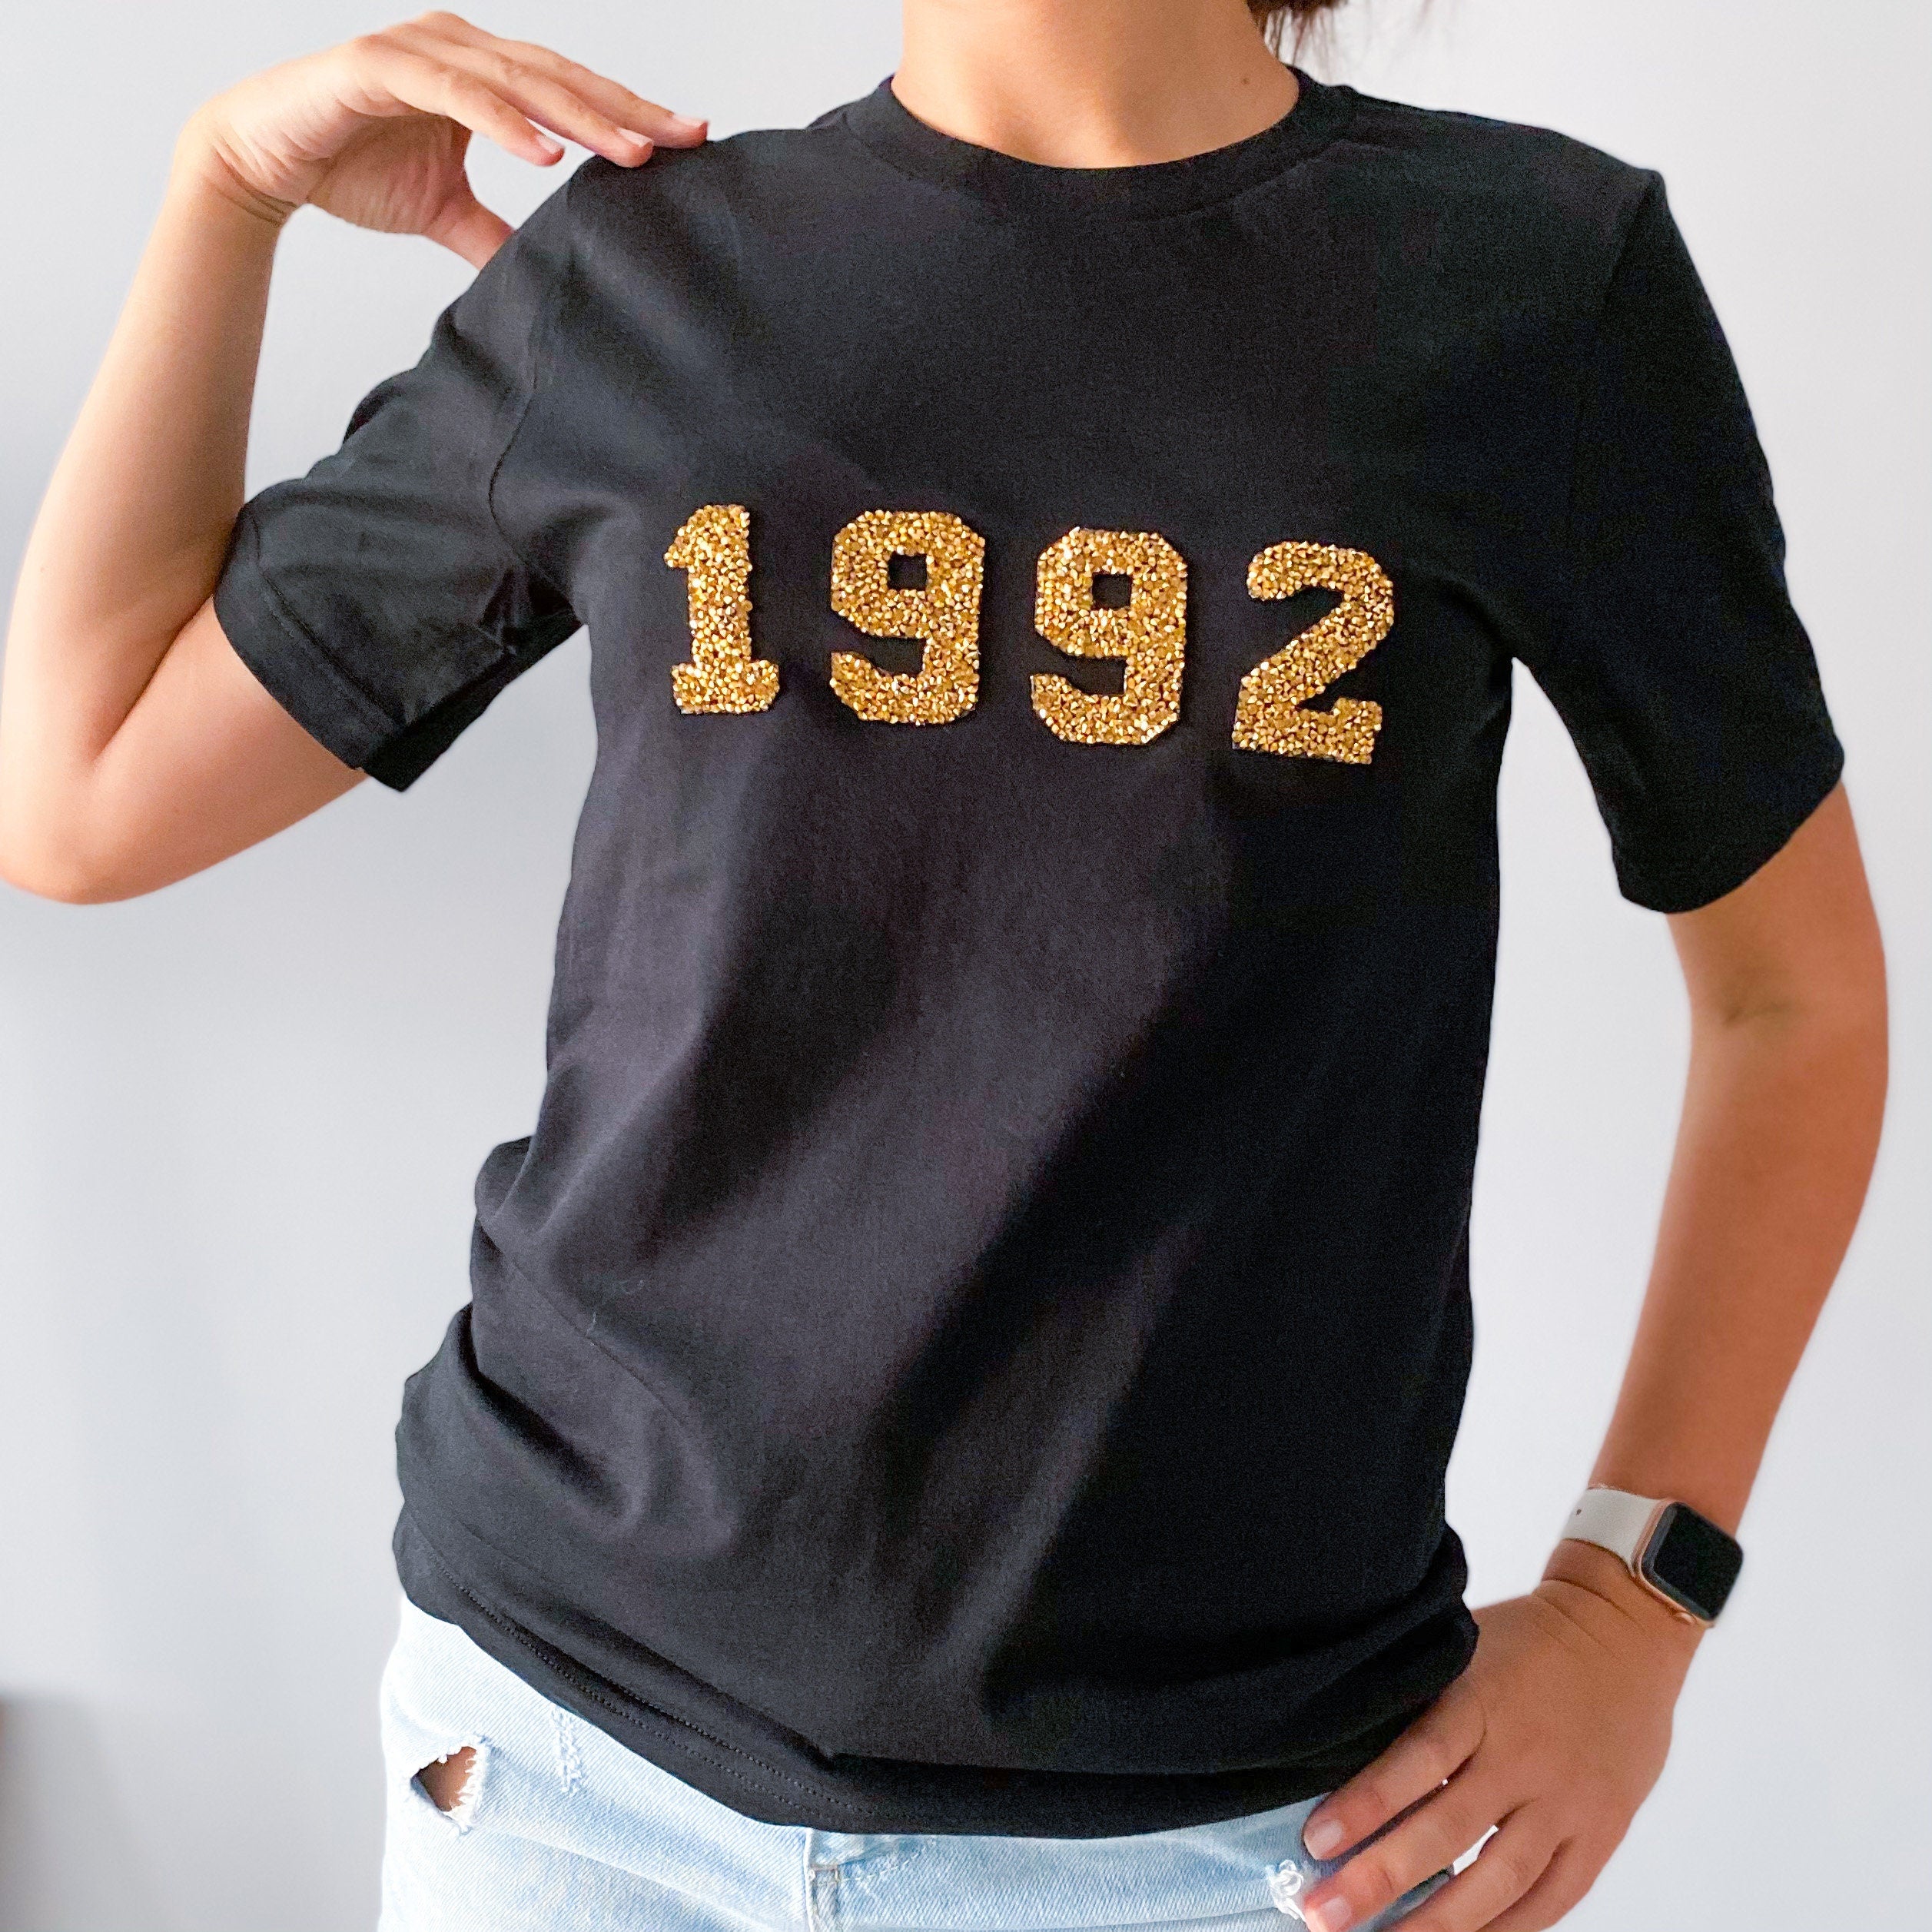 Rhinestone birthday year t-shirt, 2002 1992 1982 1972 etc, Unisex birthday top, Gift for Women